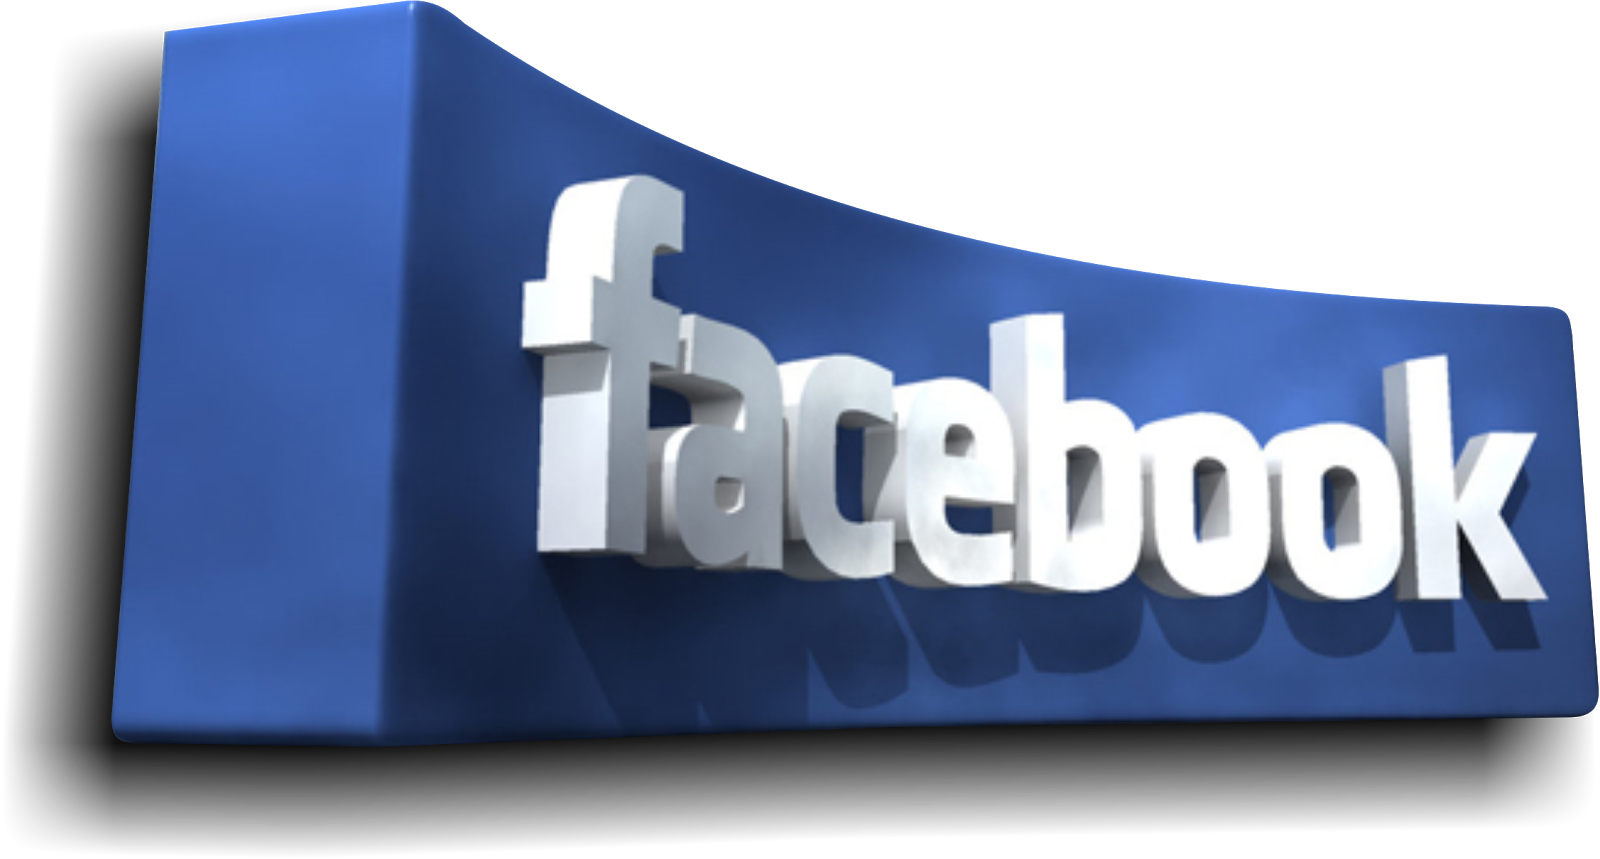 chip-ragsdale-image-of-facebook-logo